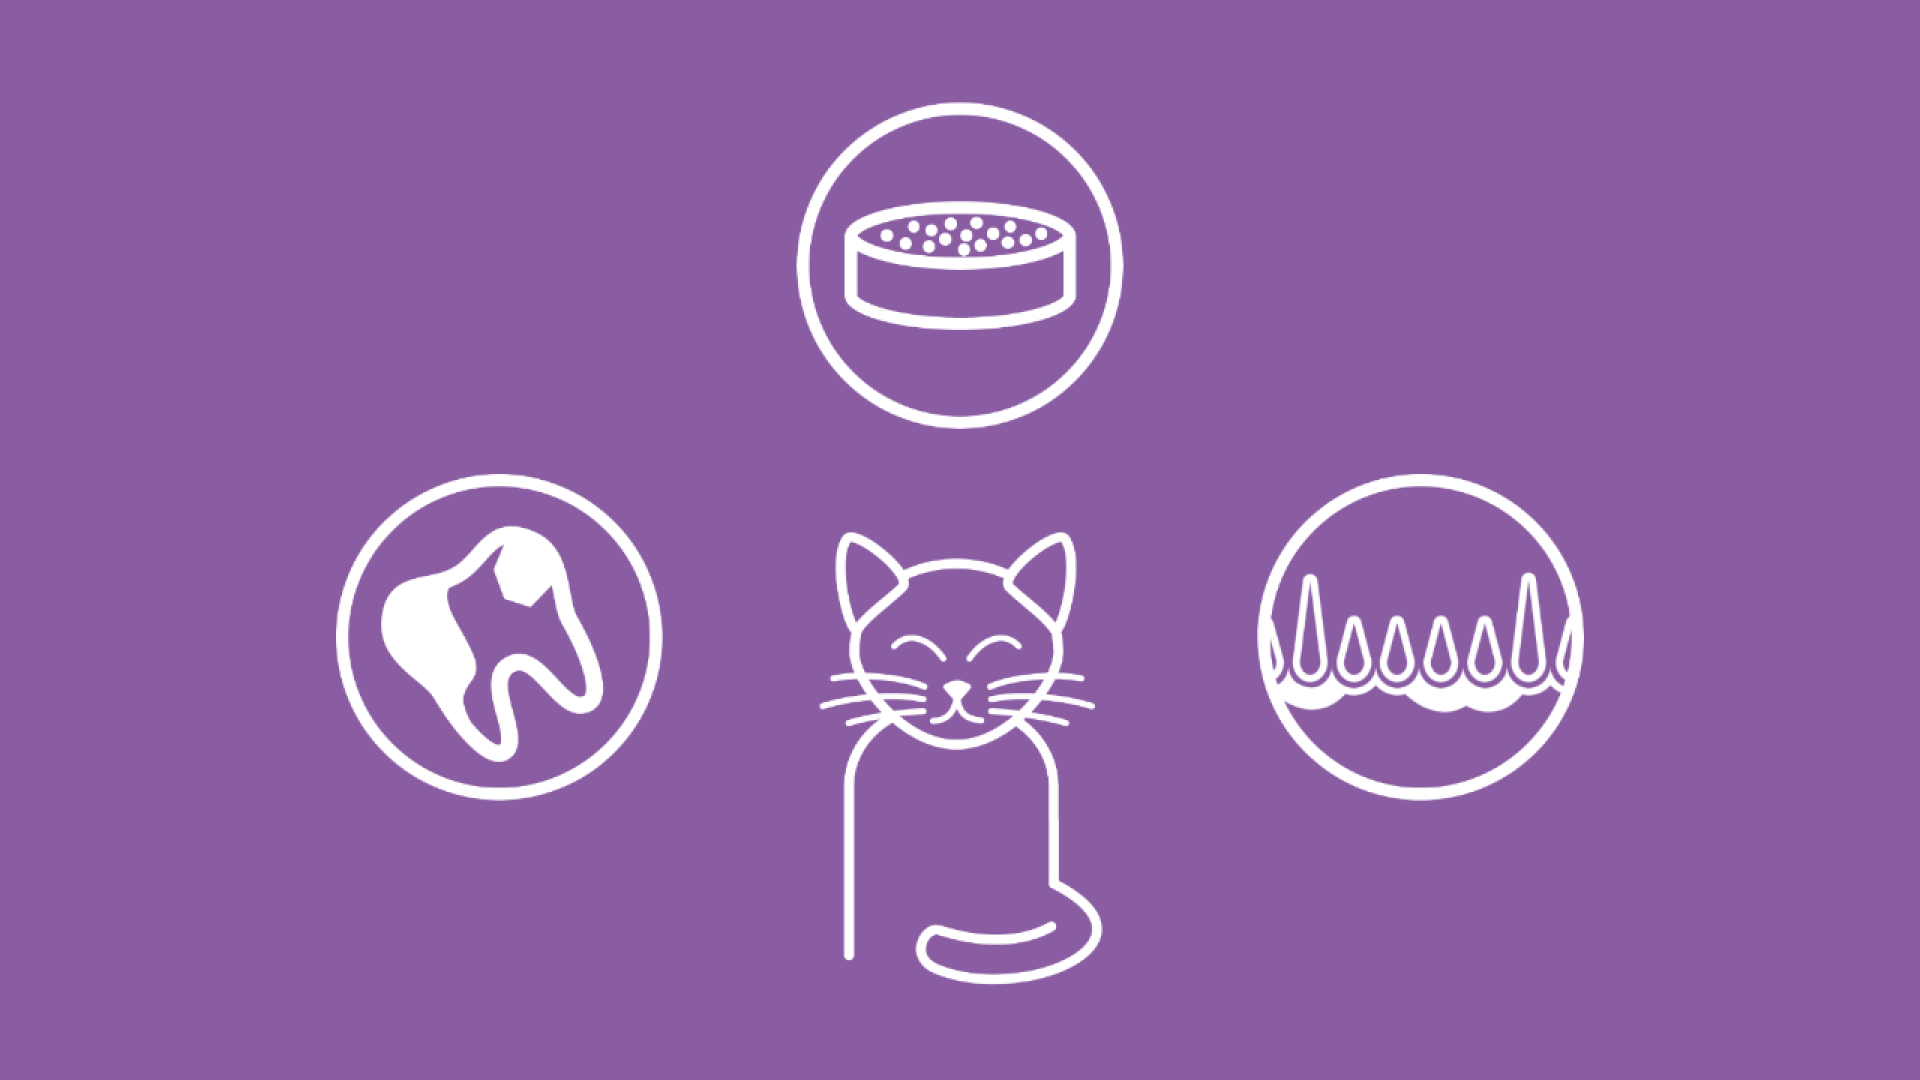 Die Grafik zeigt eine Katze, die verschiedene Symptome für Zahnstein aufweist. Title-Tag: Symptome und Anzeichen von Zahnstein bei Katzen